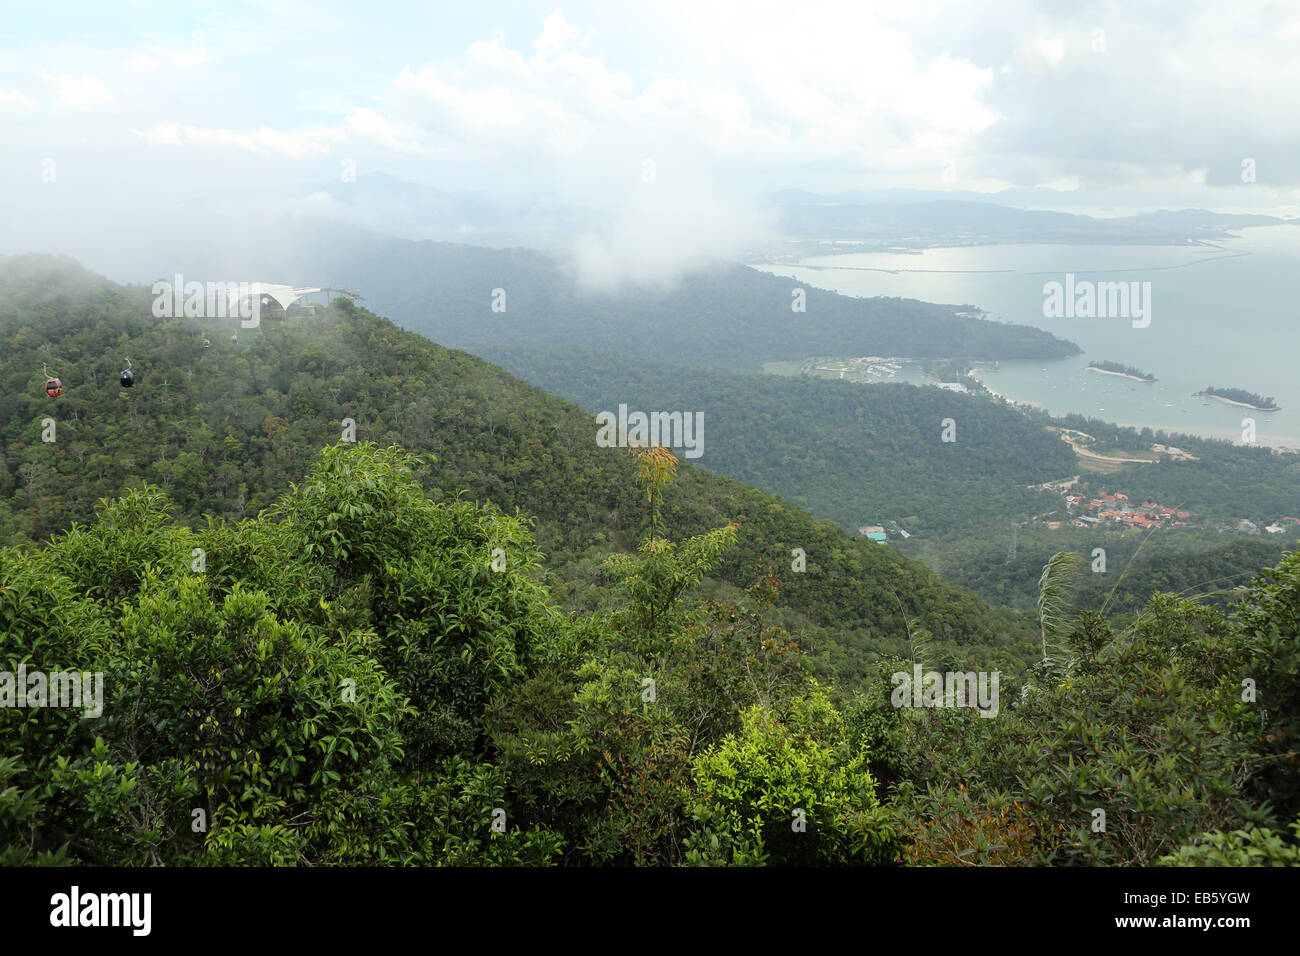 La vue de Gunung Machinchang à une altitude de 700m sur Langkawi, Malaisie. Banque D'Images